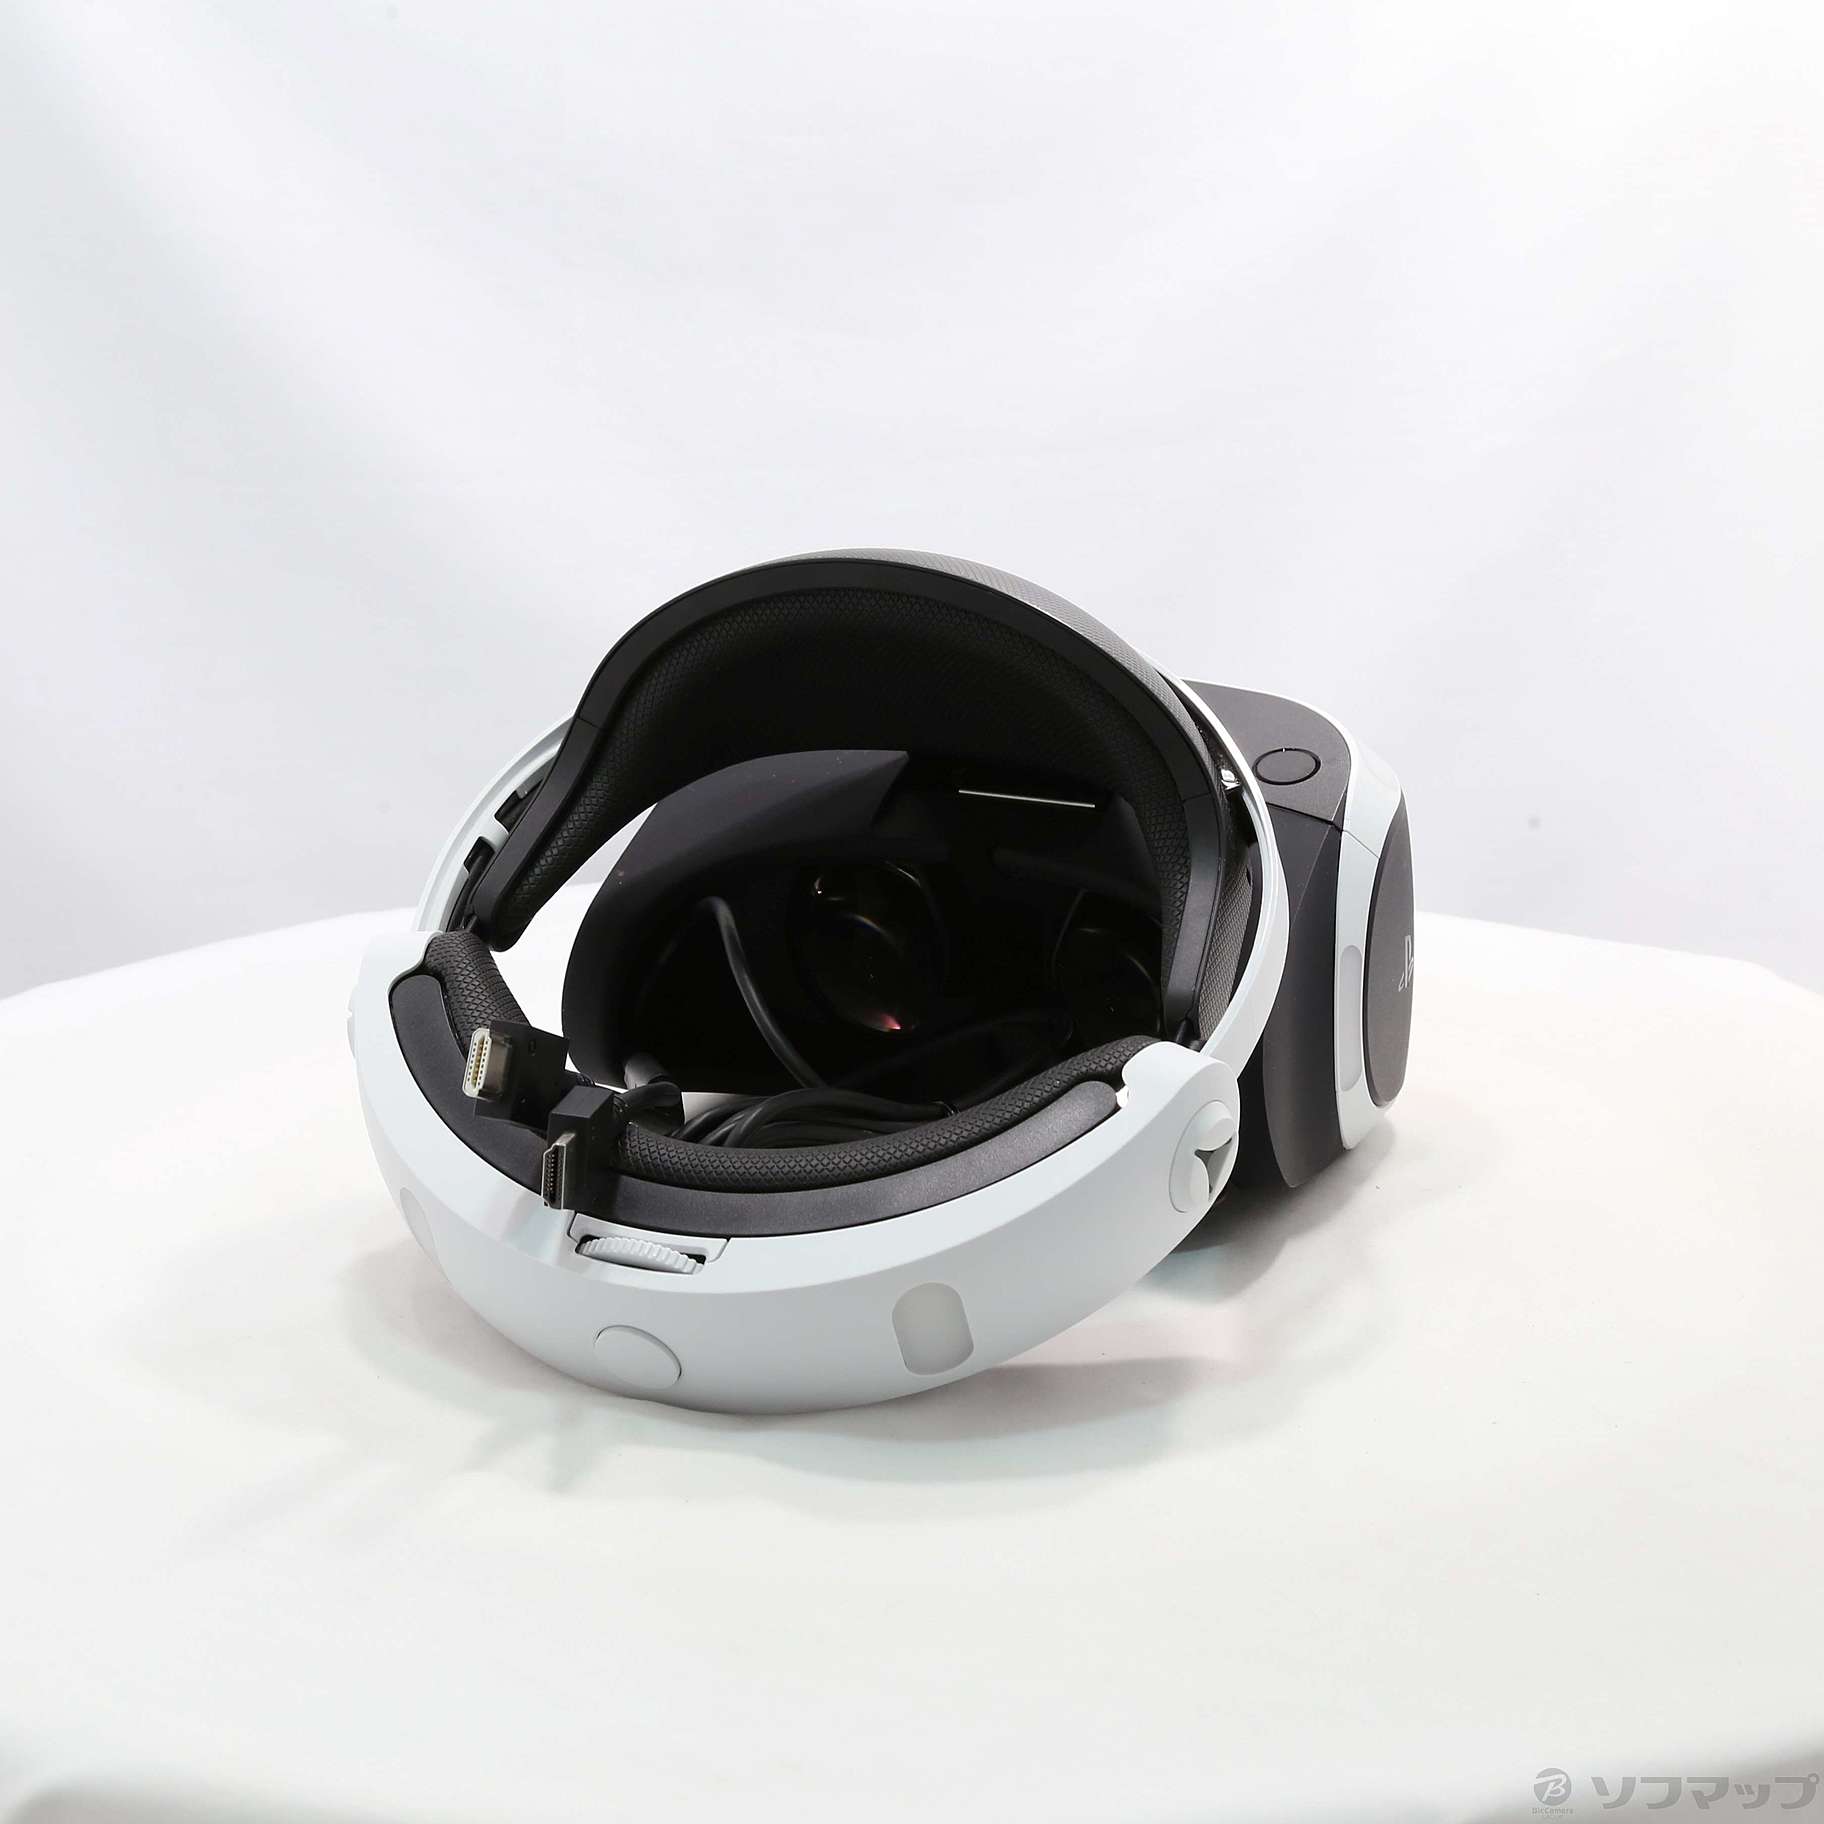 中古】PlayStation VR 「PlayStation VR WORLDS」 特典封入版